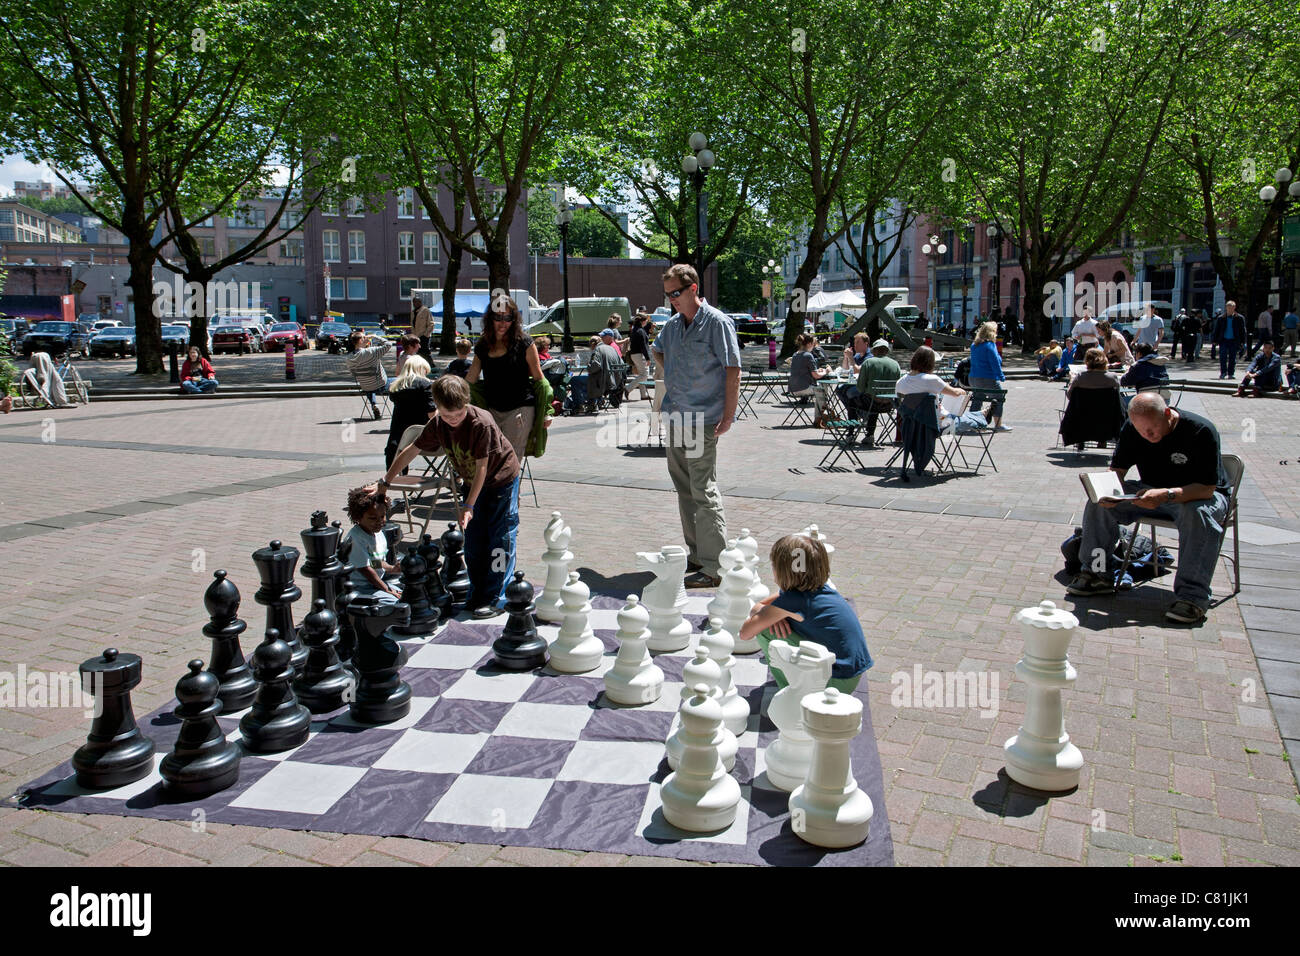 Enfants jouant aux échecs. Pioneer Square. Seattle. USA Banque D'Images